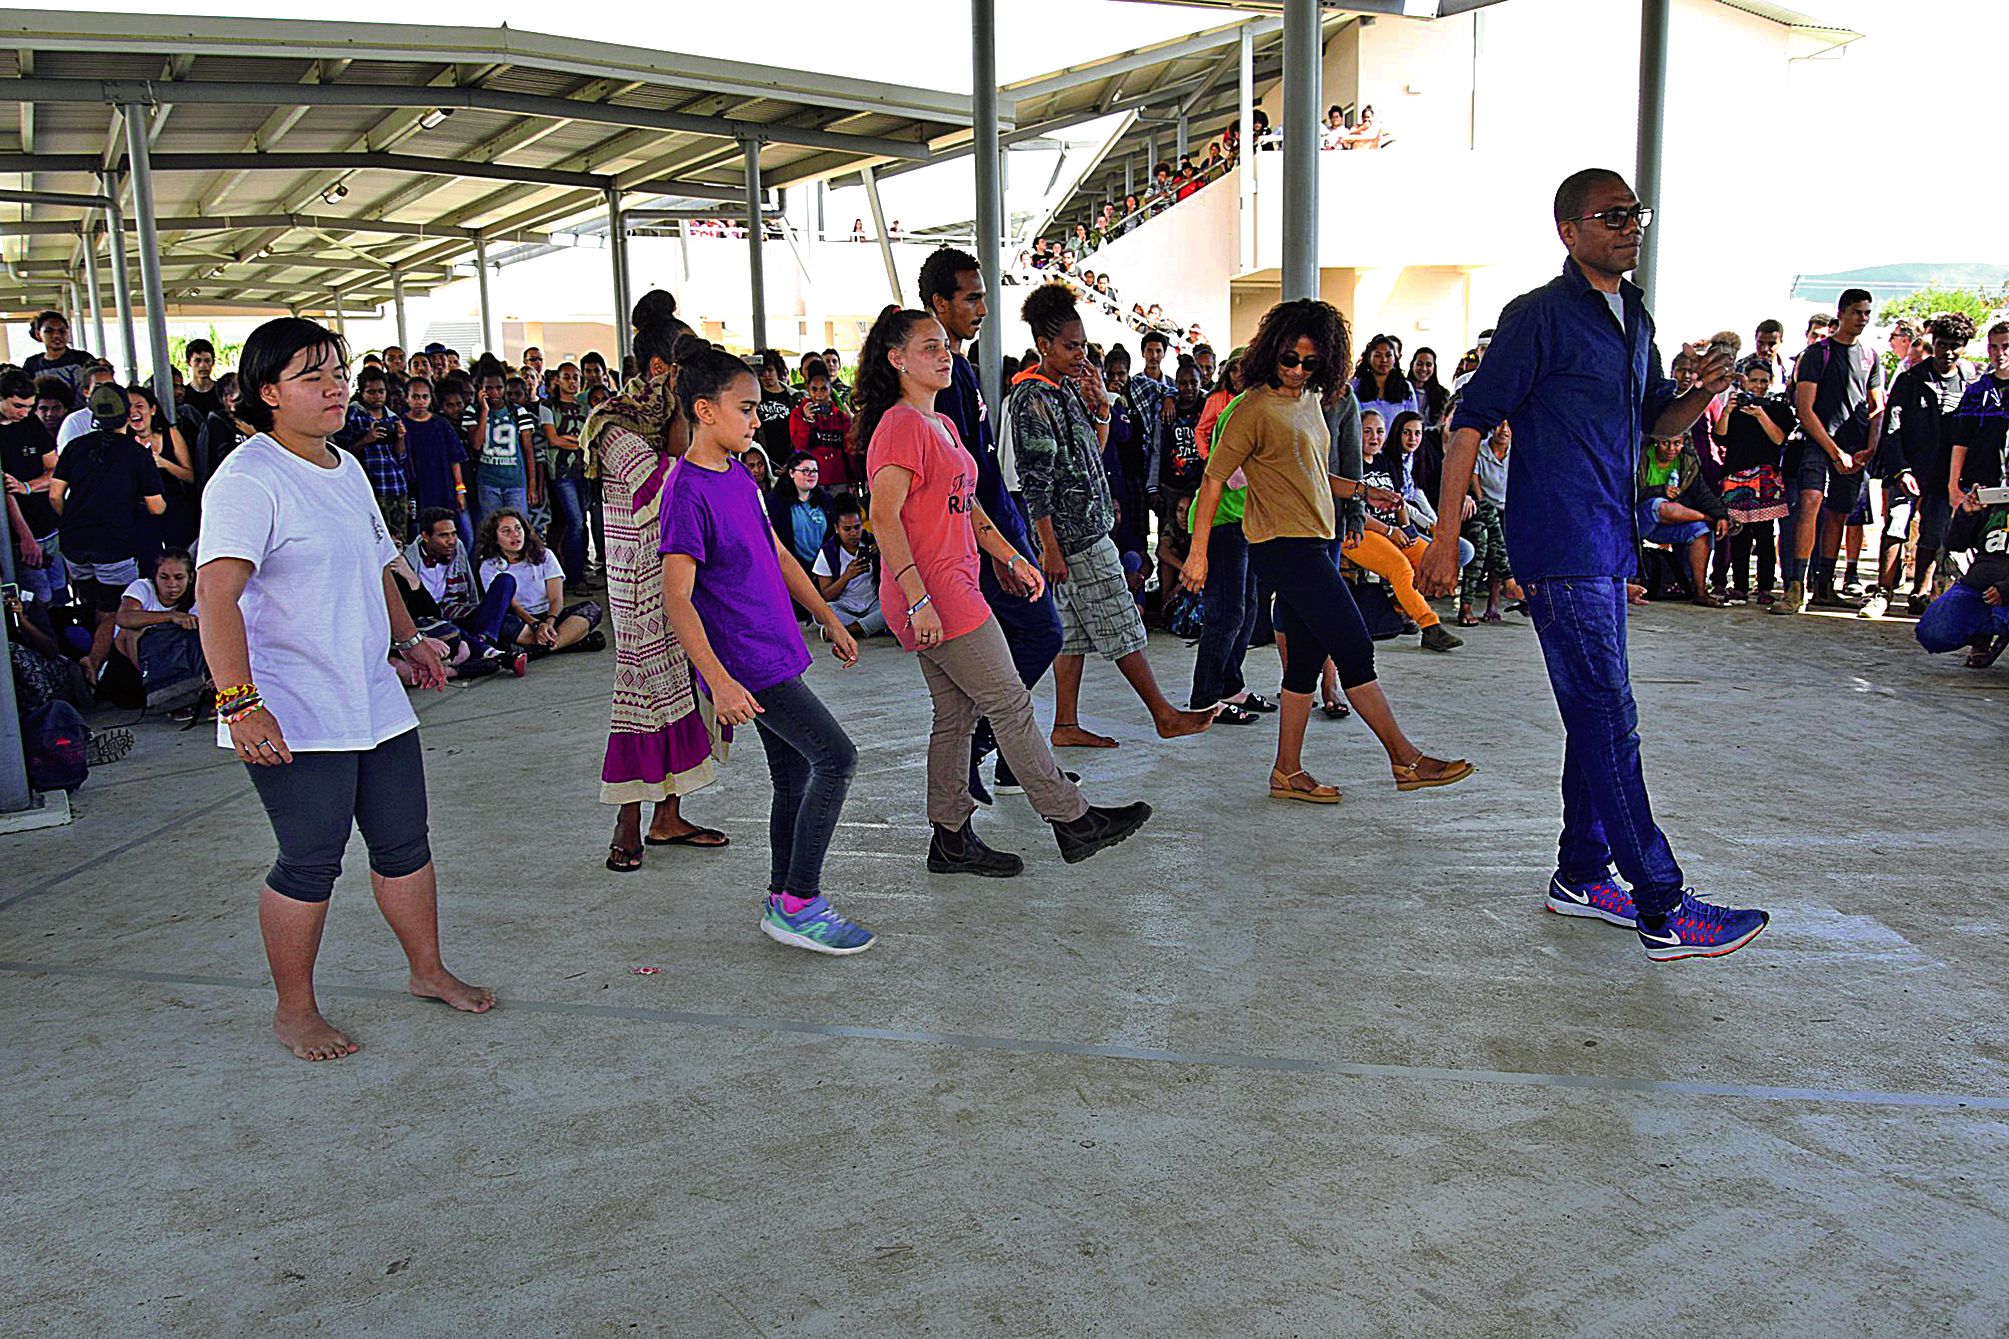 Après la remise des récompenses, une danse participative a eu lieu. Des élèves et leur professeur ont proposé un medley de musiques locales, représentant toutes les communautés du Caillou.